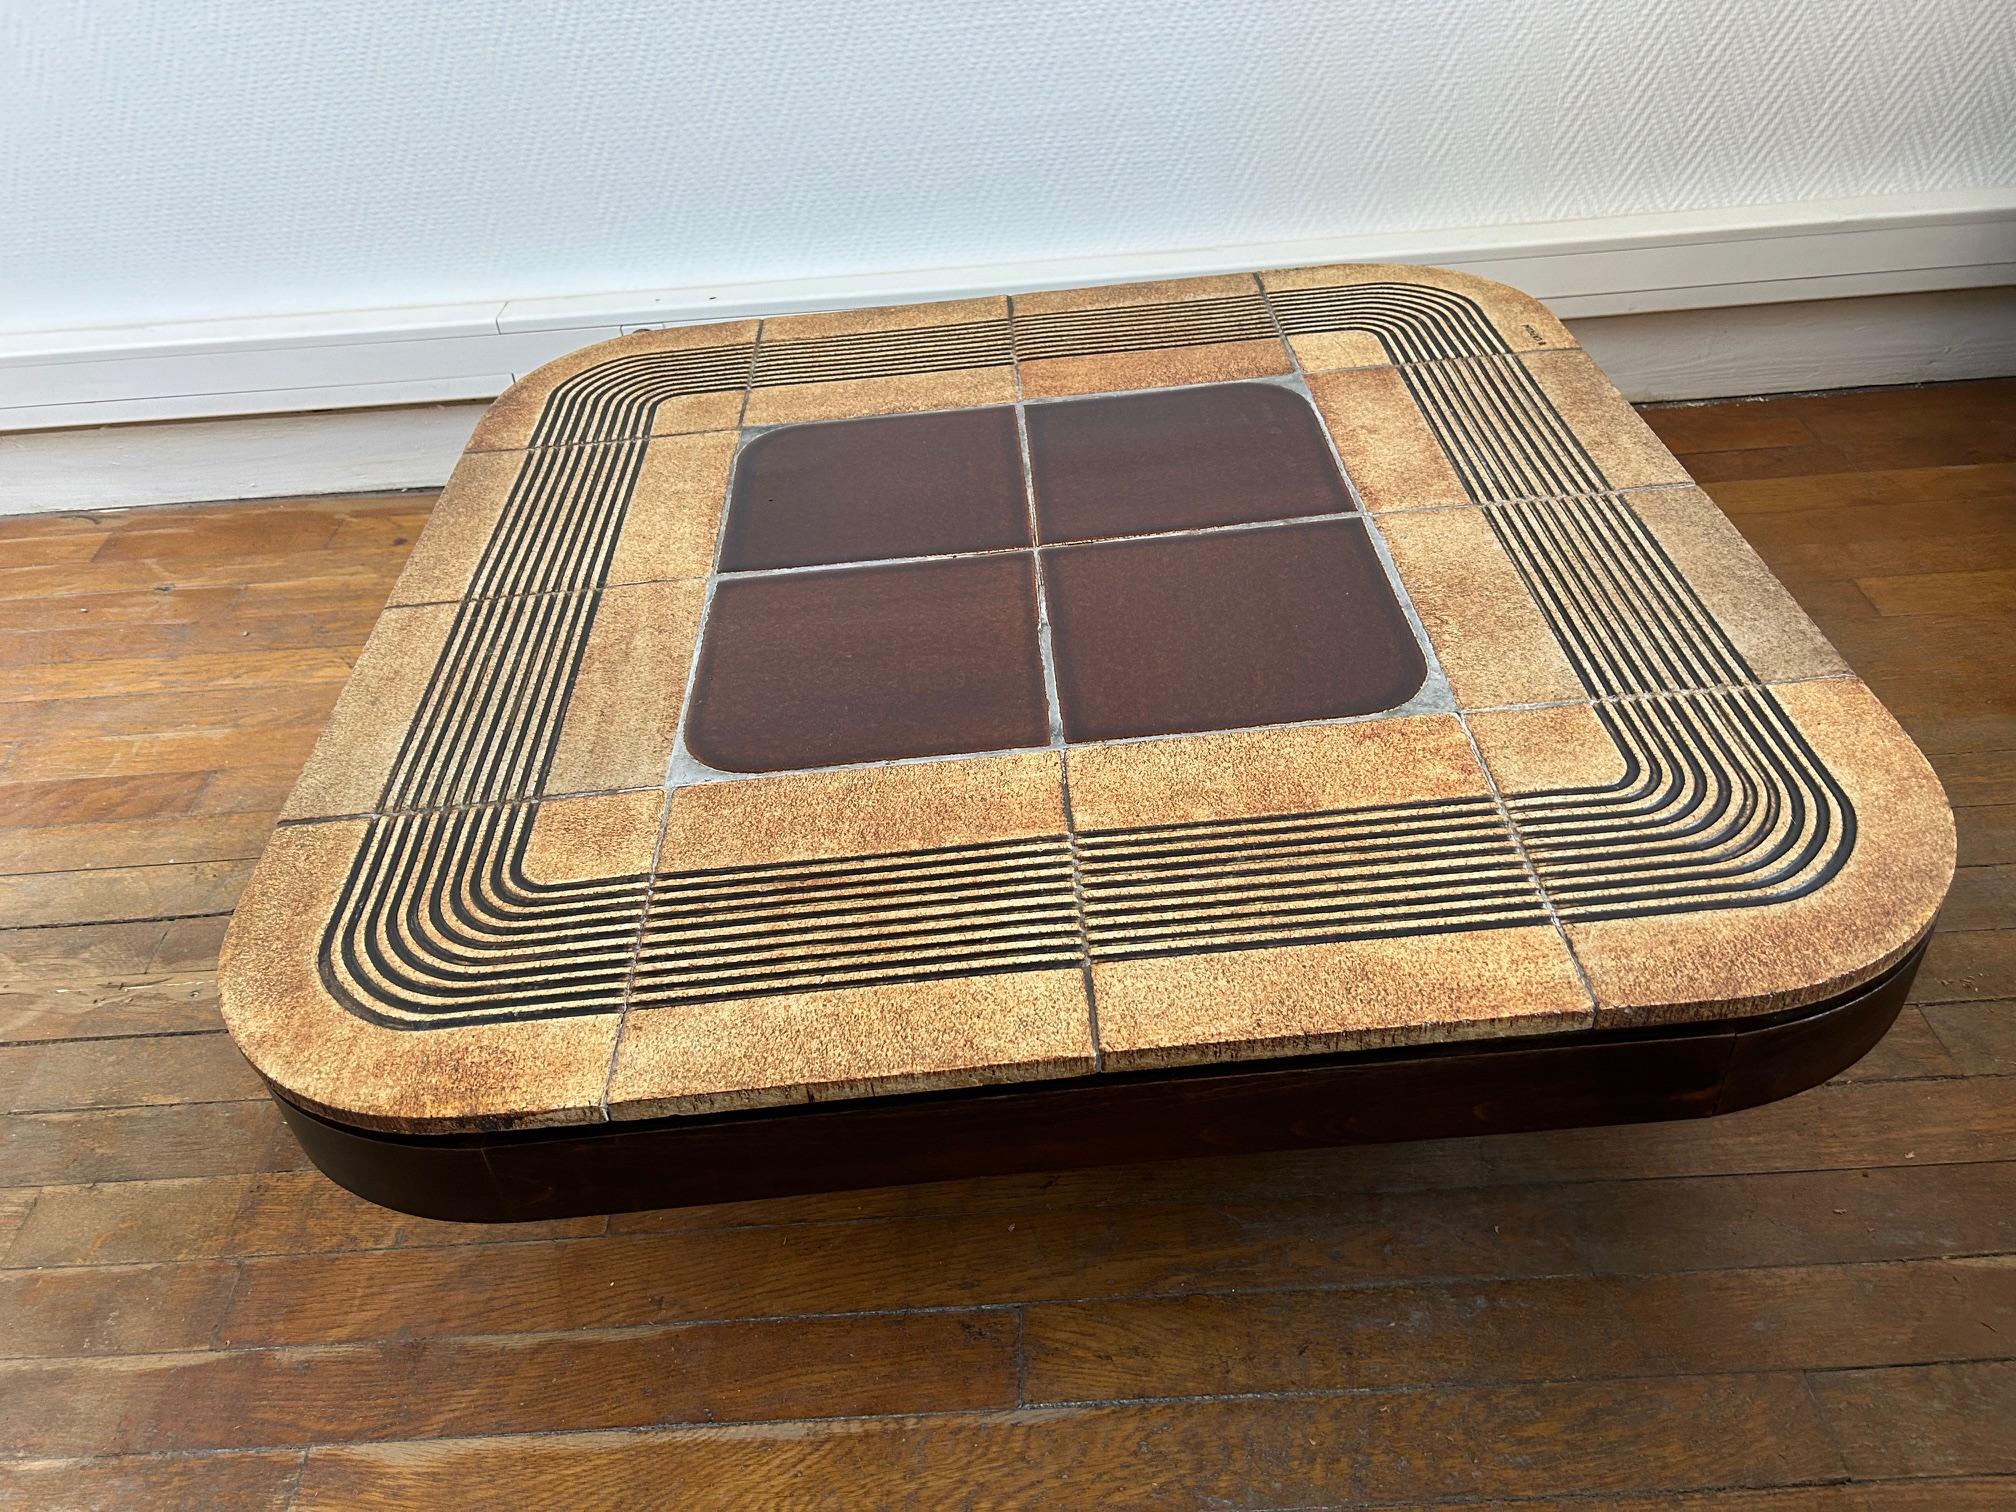 Mambo Tisch von Roger Capron, Keramik und Holz, Frankreich, 1970er Jahre